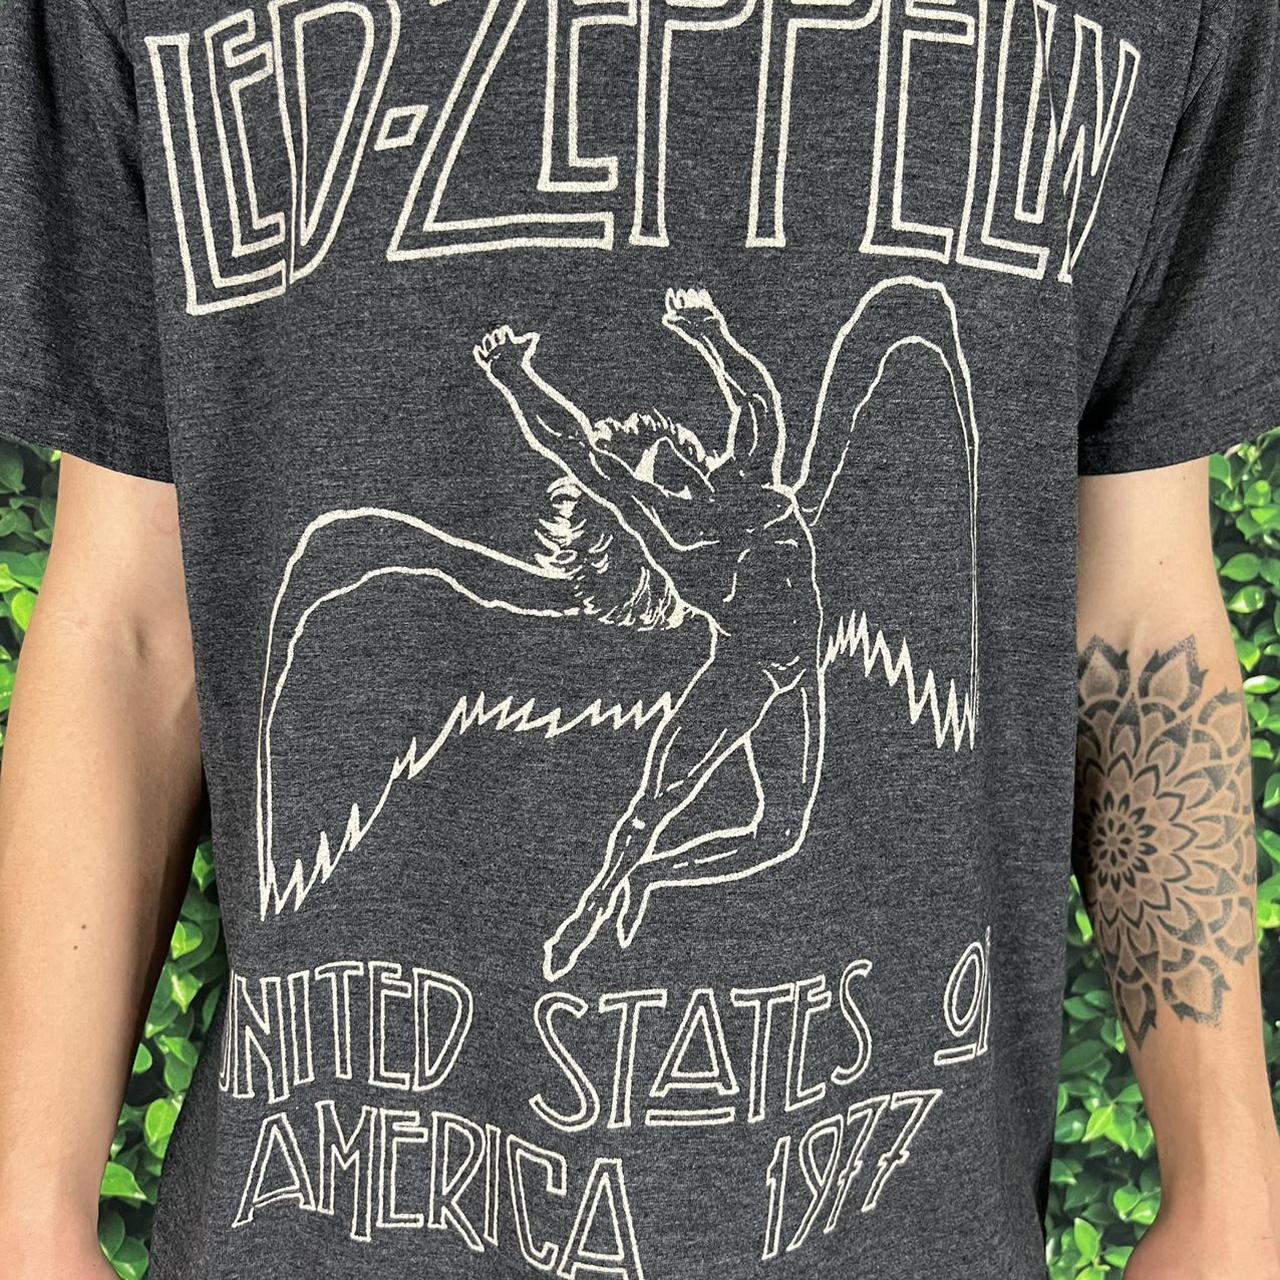 Product Image 3 - Led Zeppelin United States of